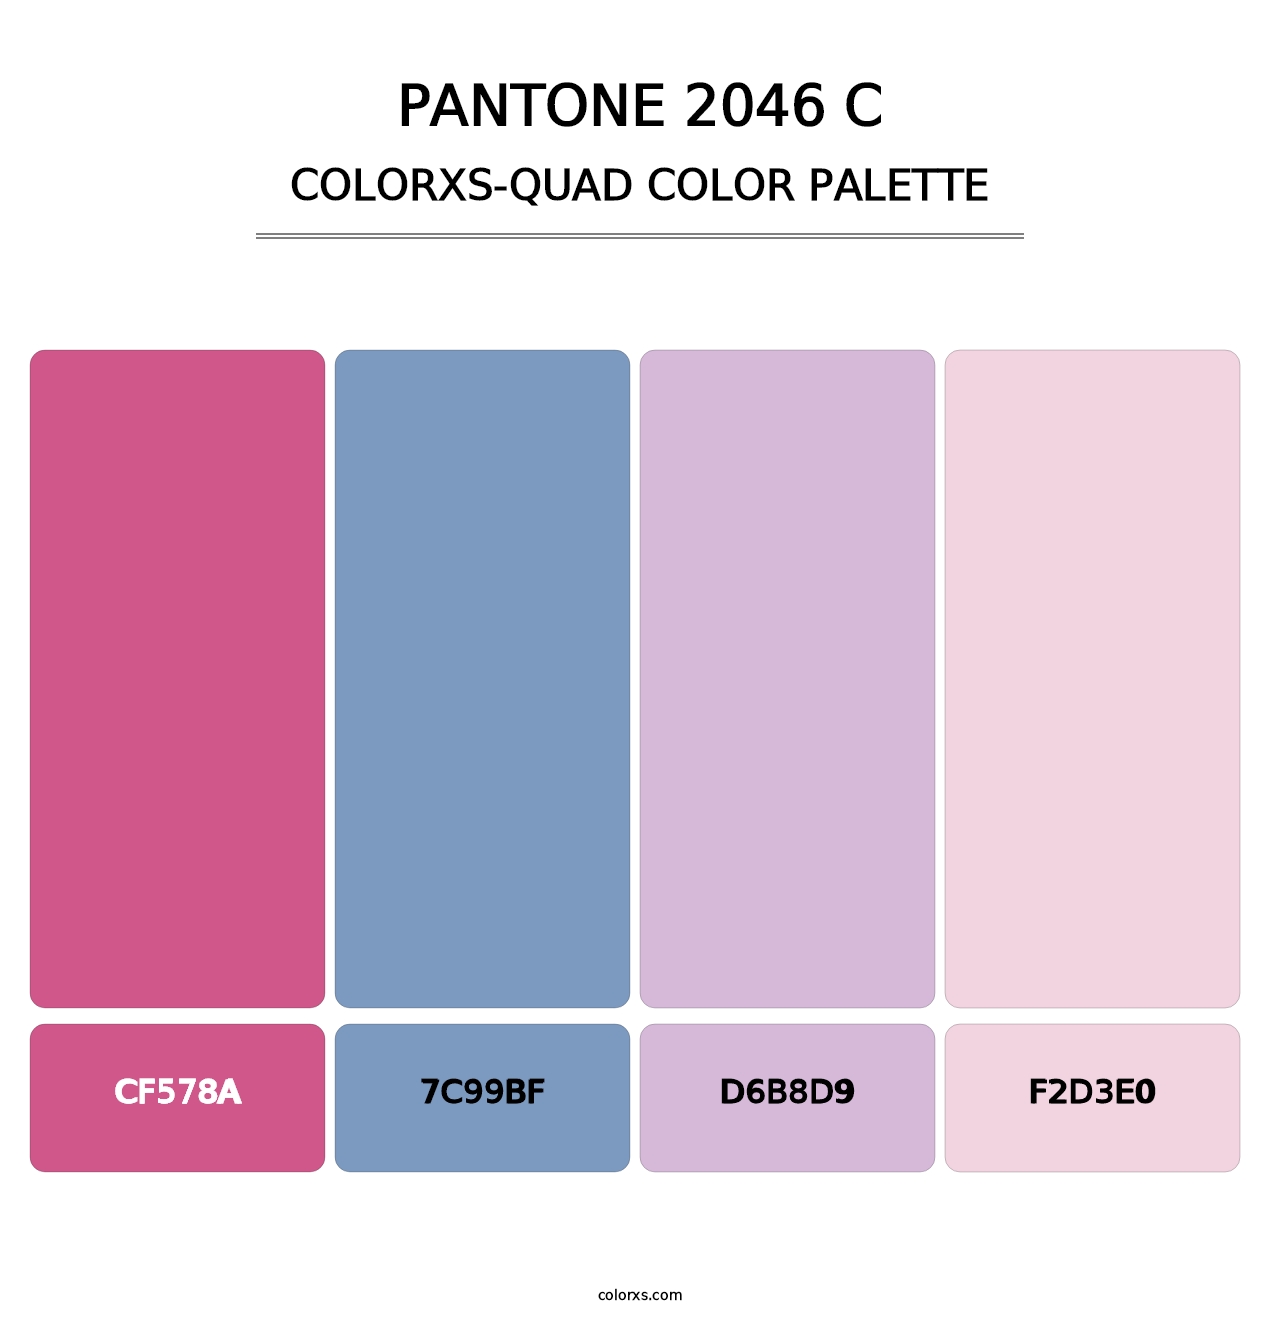 PANTONE 2046 C - Colorxs Quad Palette